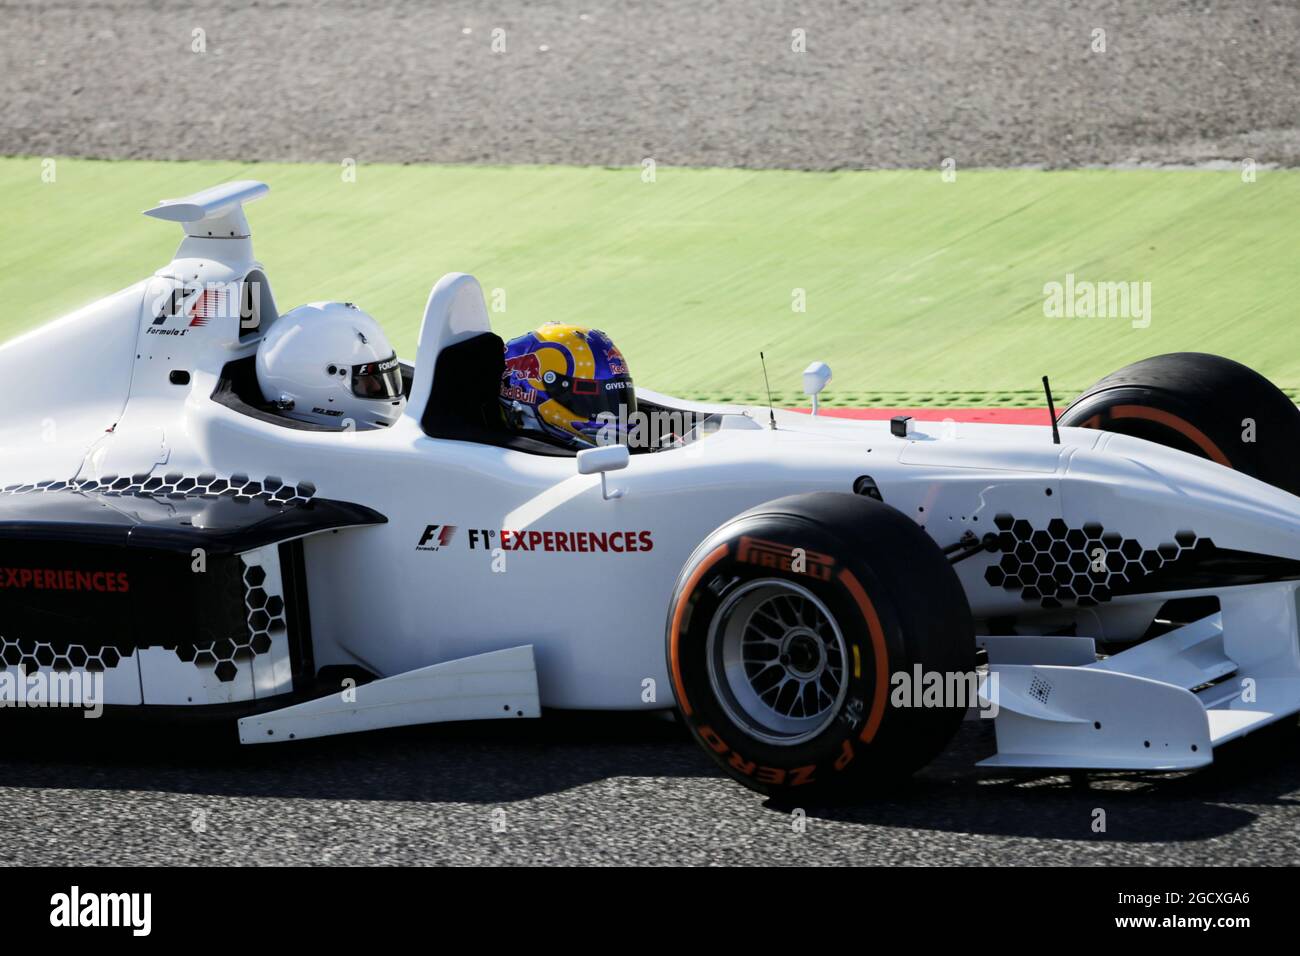 Patrick Friesacher (AUT) im zweisitzigen F1 Experiences Racing Car. Großer Preis von Spanien, Samstag, 13. Mai 2017. Barcelona, Spanien. Stockfoto